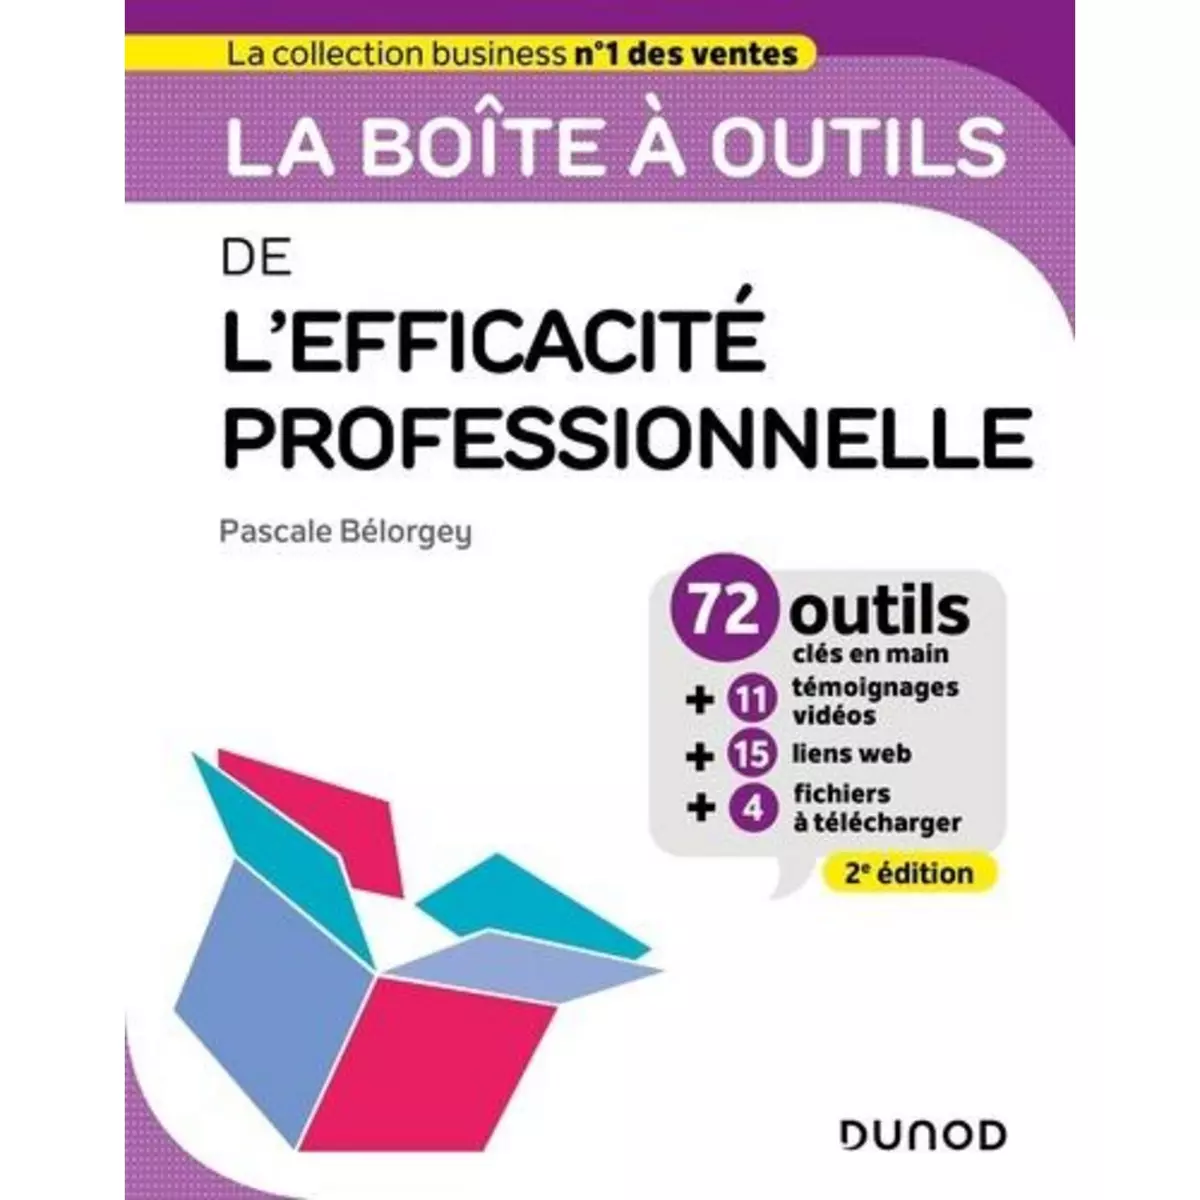  LA BOITE A OUTILS DE L'EFFICACITE PROFESSIONNELLE. 72 OUTILS CLES EN MAIN, 2E EDITION, Bélorgey Pascale